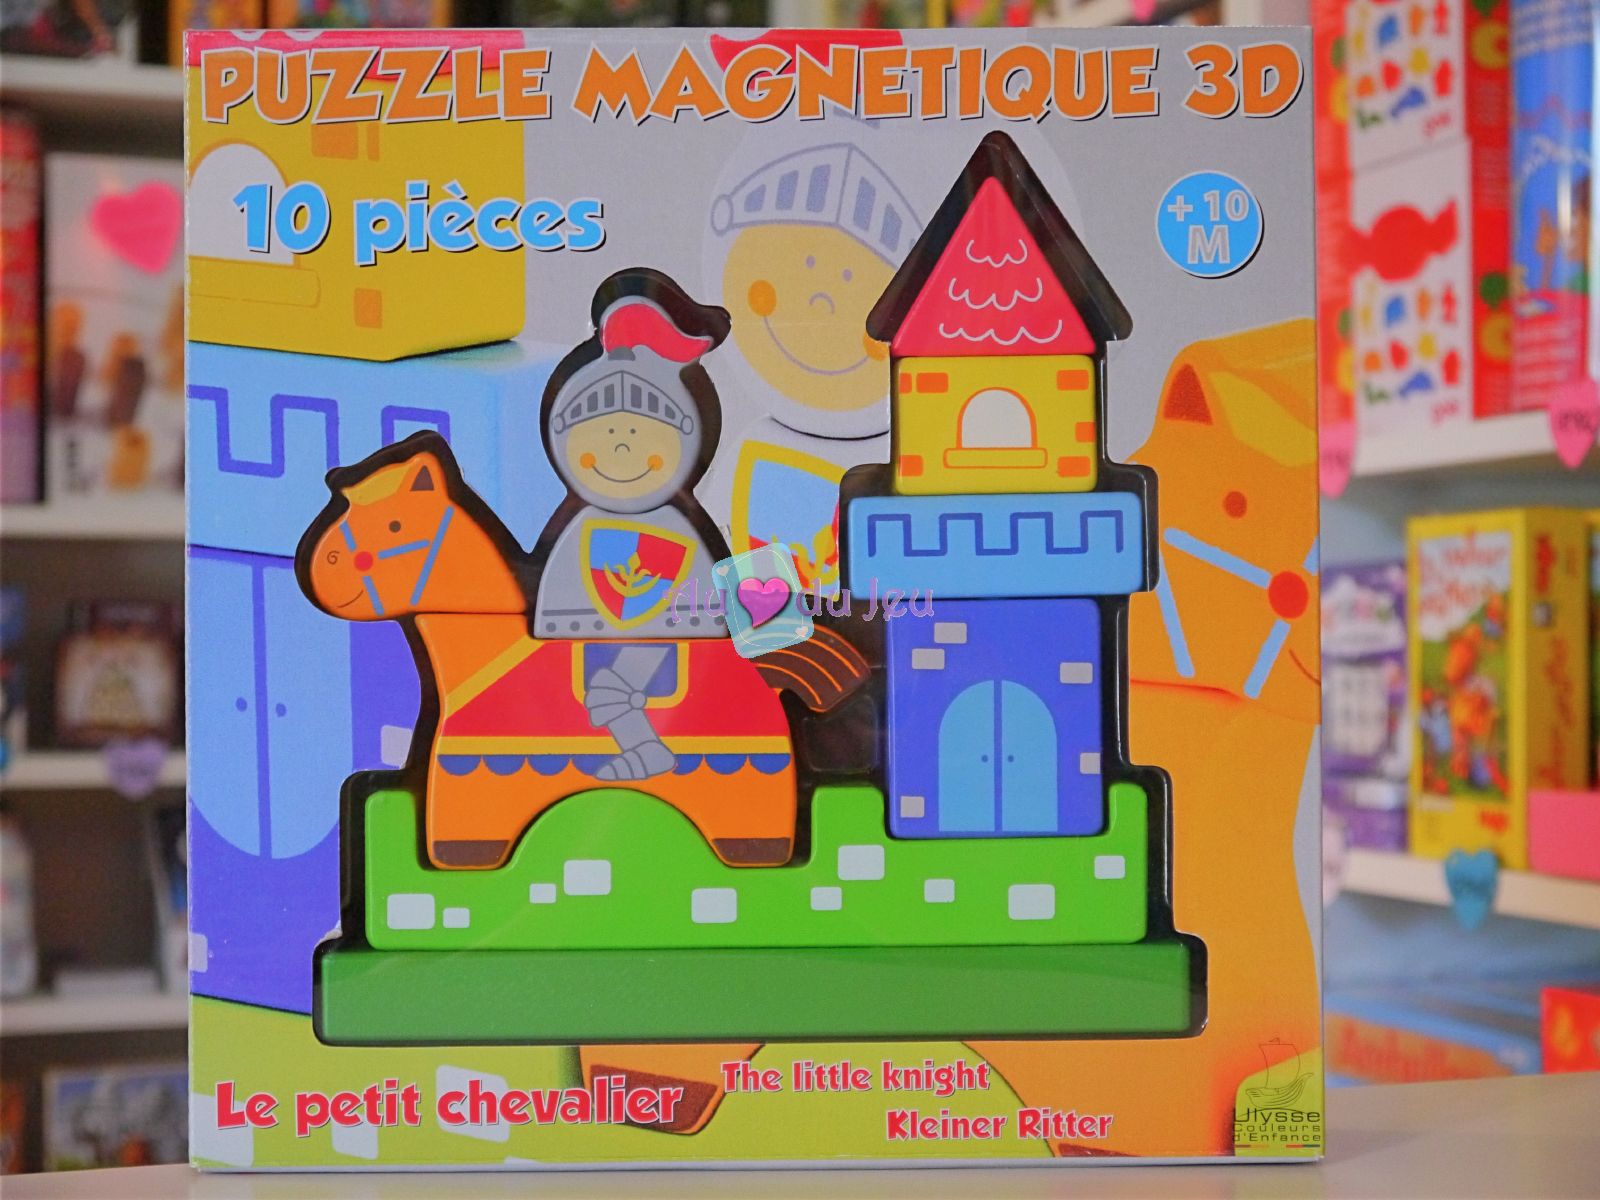 Puzzle Magnétique 3D Chevalier Ulysse